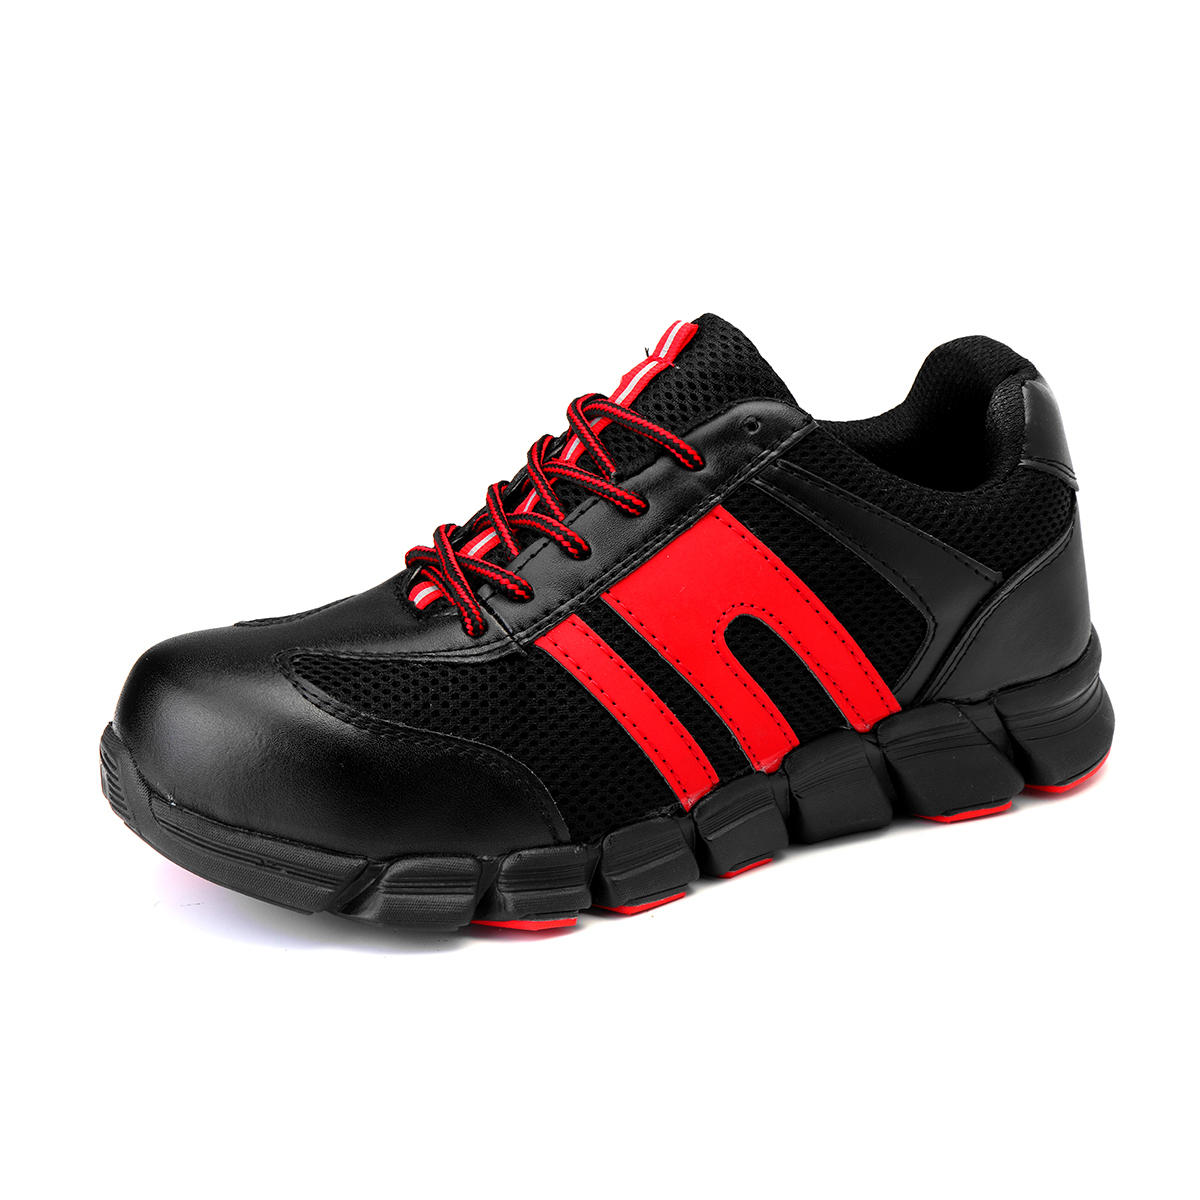 ENGOO Su Geçirmez Güvenlik Ayakkabısı Çelik İş Ayakkabısı Erkek Moda Spor Ayakkabılar Kaymaz.